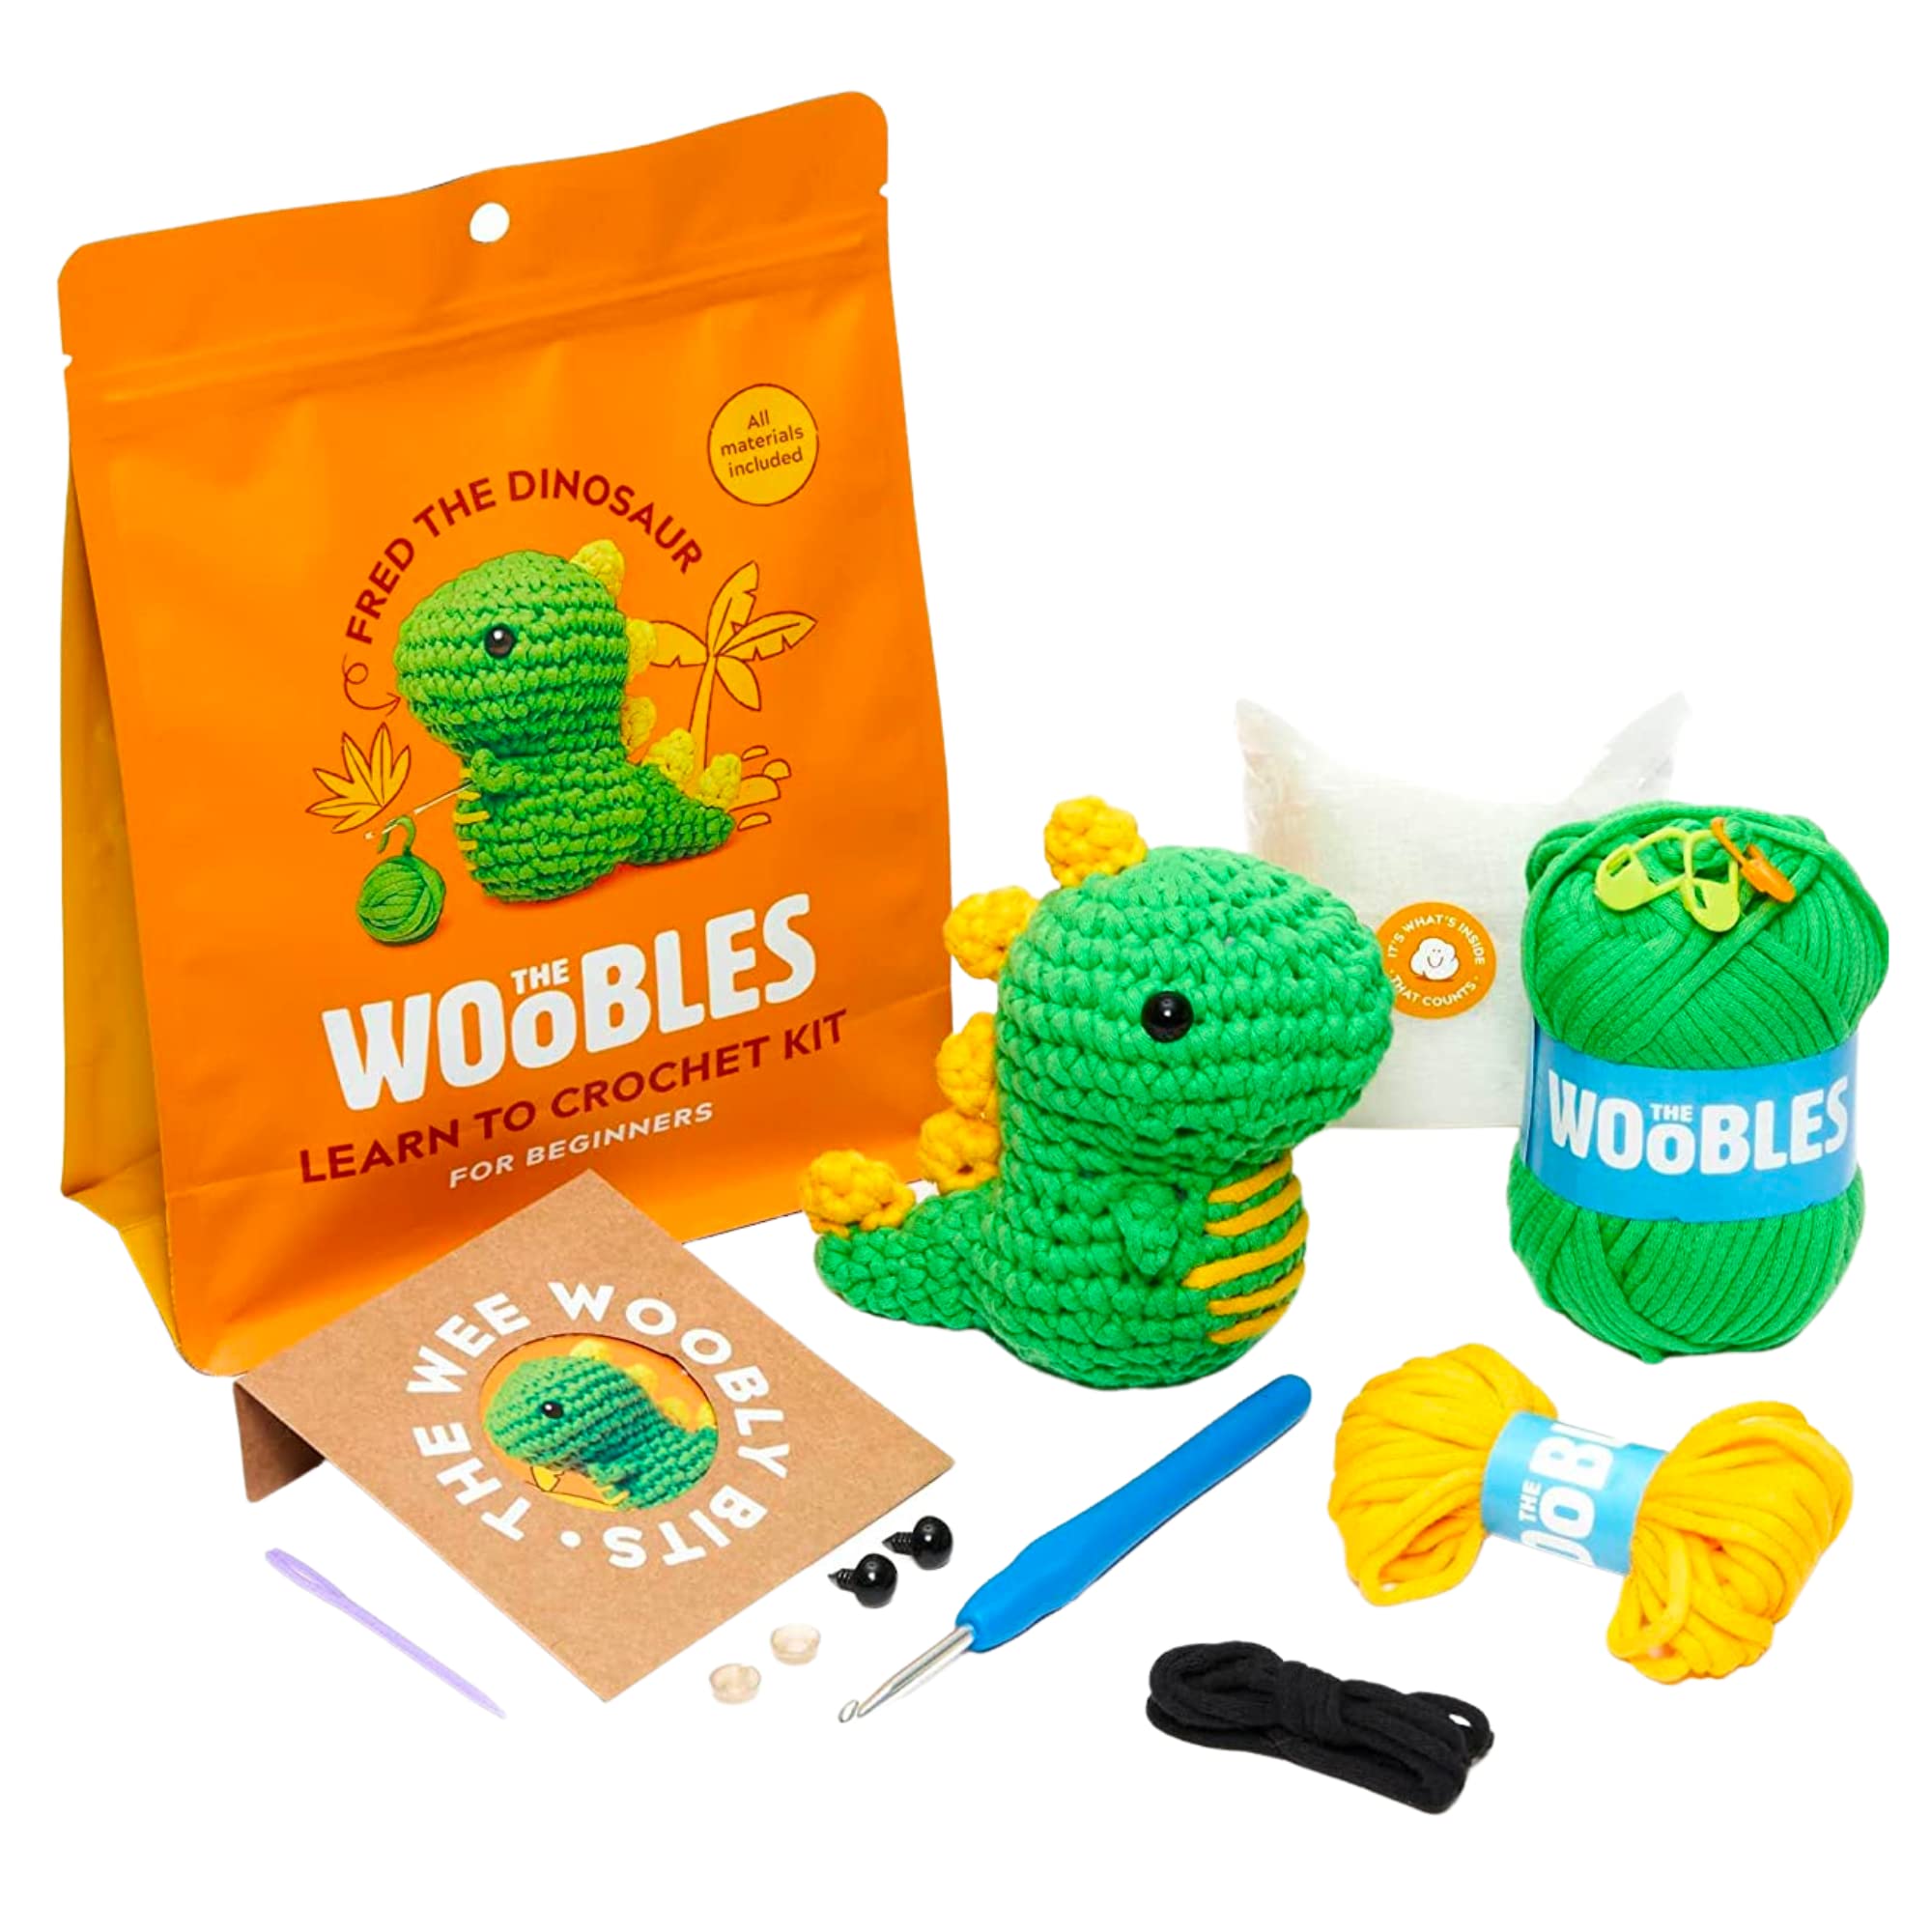 biuzii croet full kit for beginners, crochet kit, the woobles crochet kit